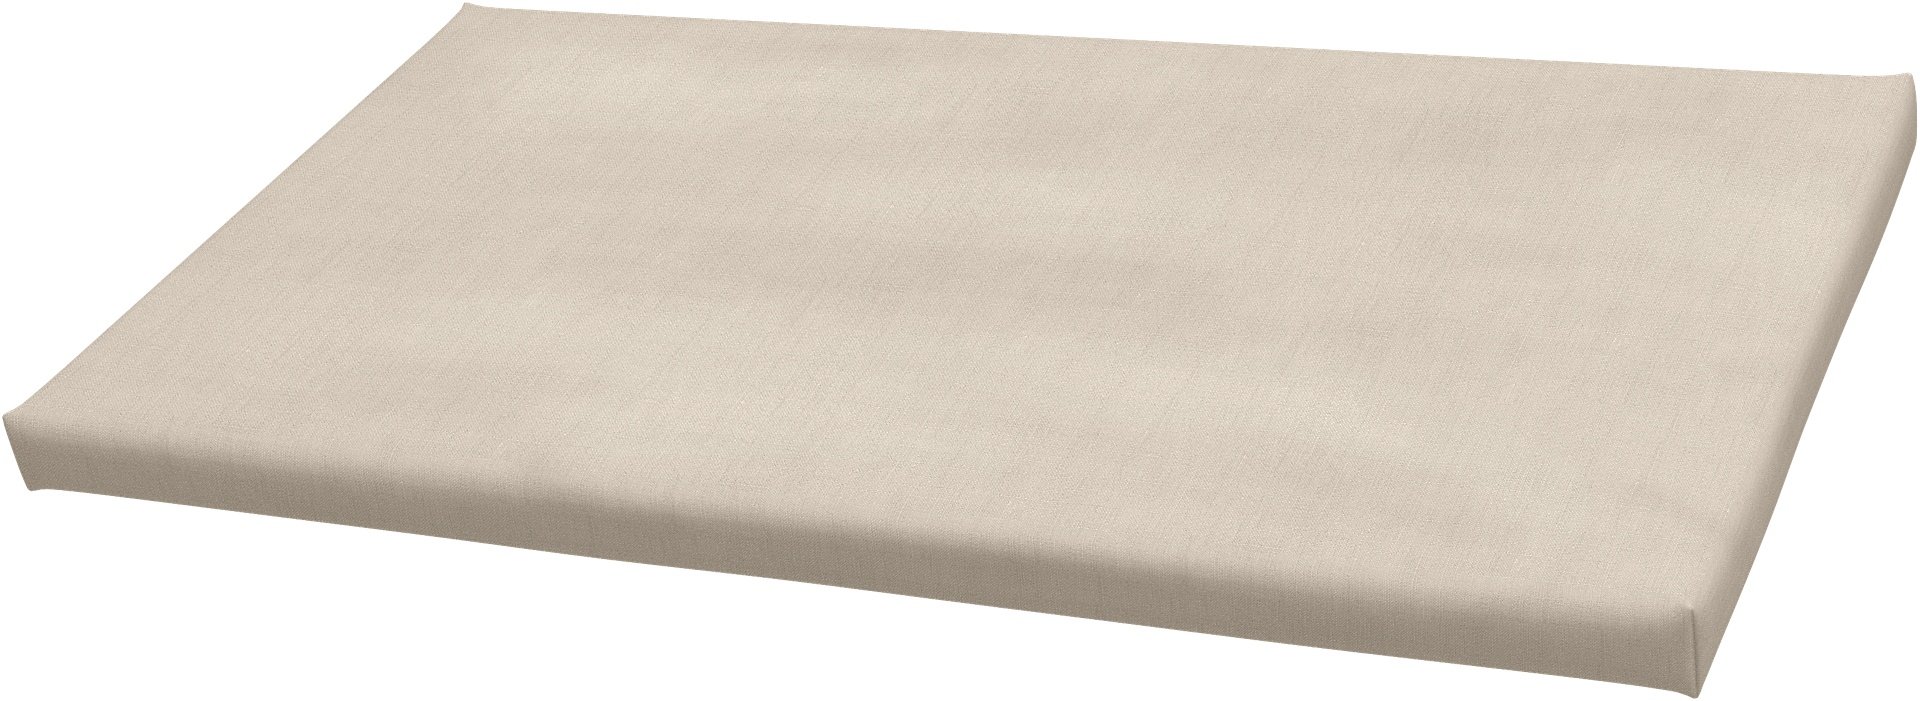 IKEA - Bankkamrat Cushion Cover 90x50x3,5 cm , Parchment, Linen - Bemz